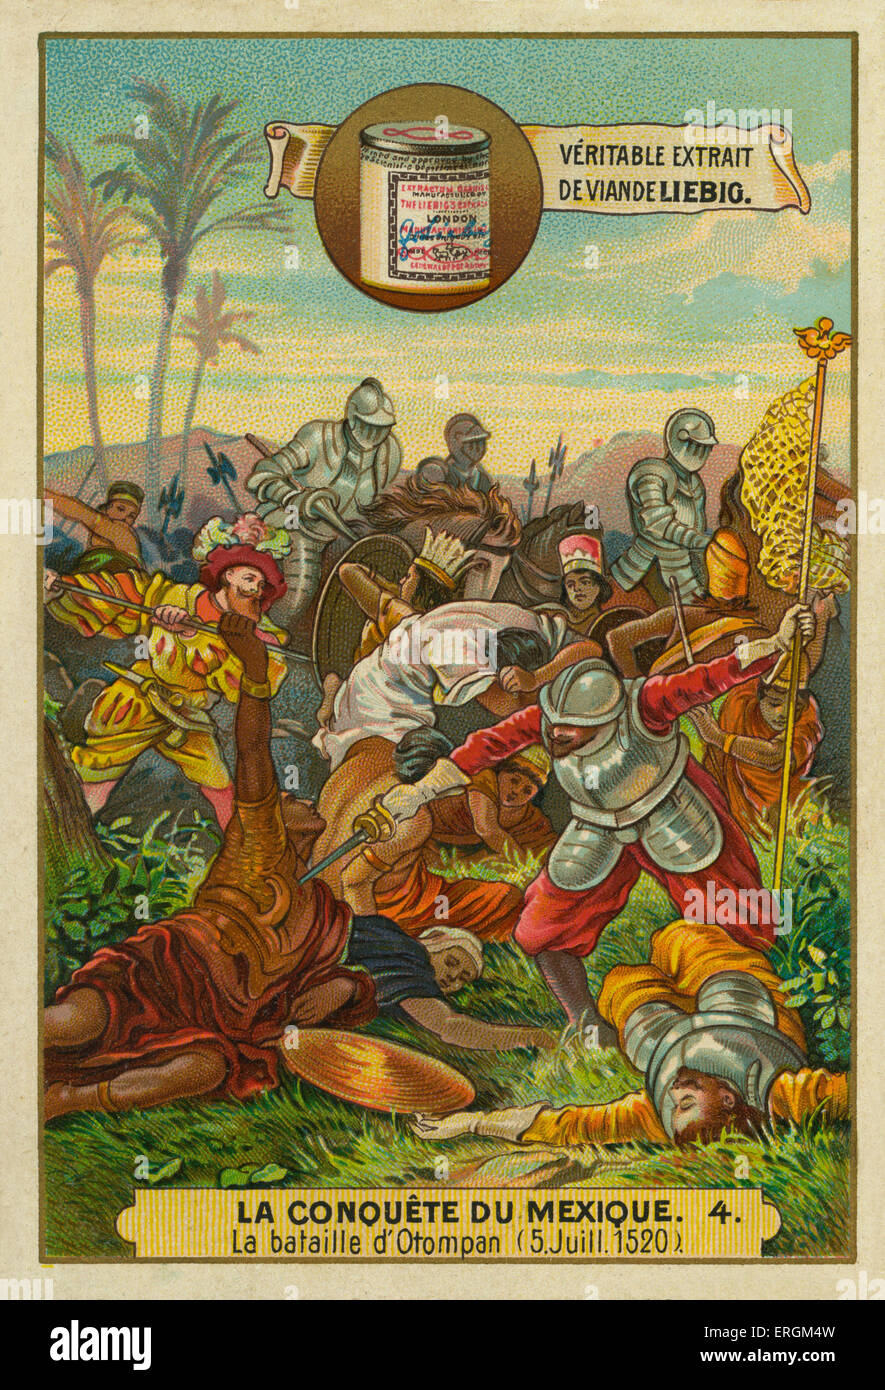 Die Schlacht von Otumpa zwischen aztekische und spanische Truppen im Juli 1520. (Französisch: La Bataille d'Otompan, 5 Juillet 1520).  Liebig Stockfoto